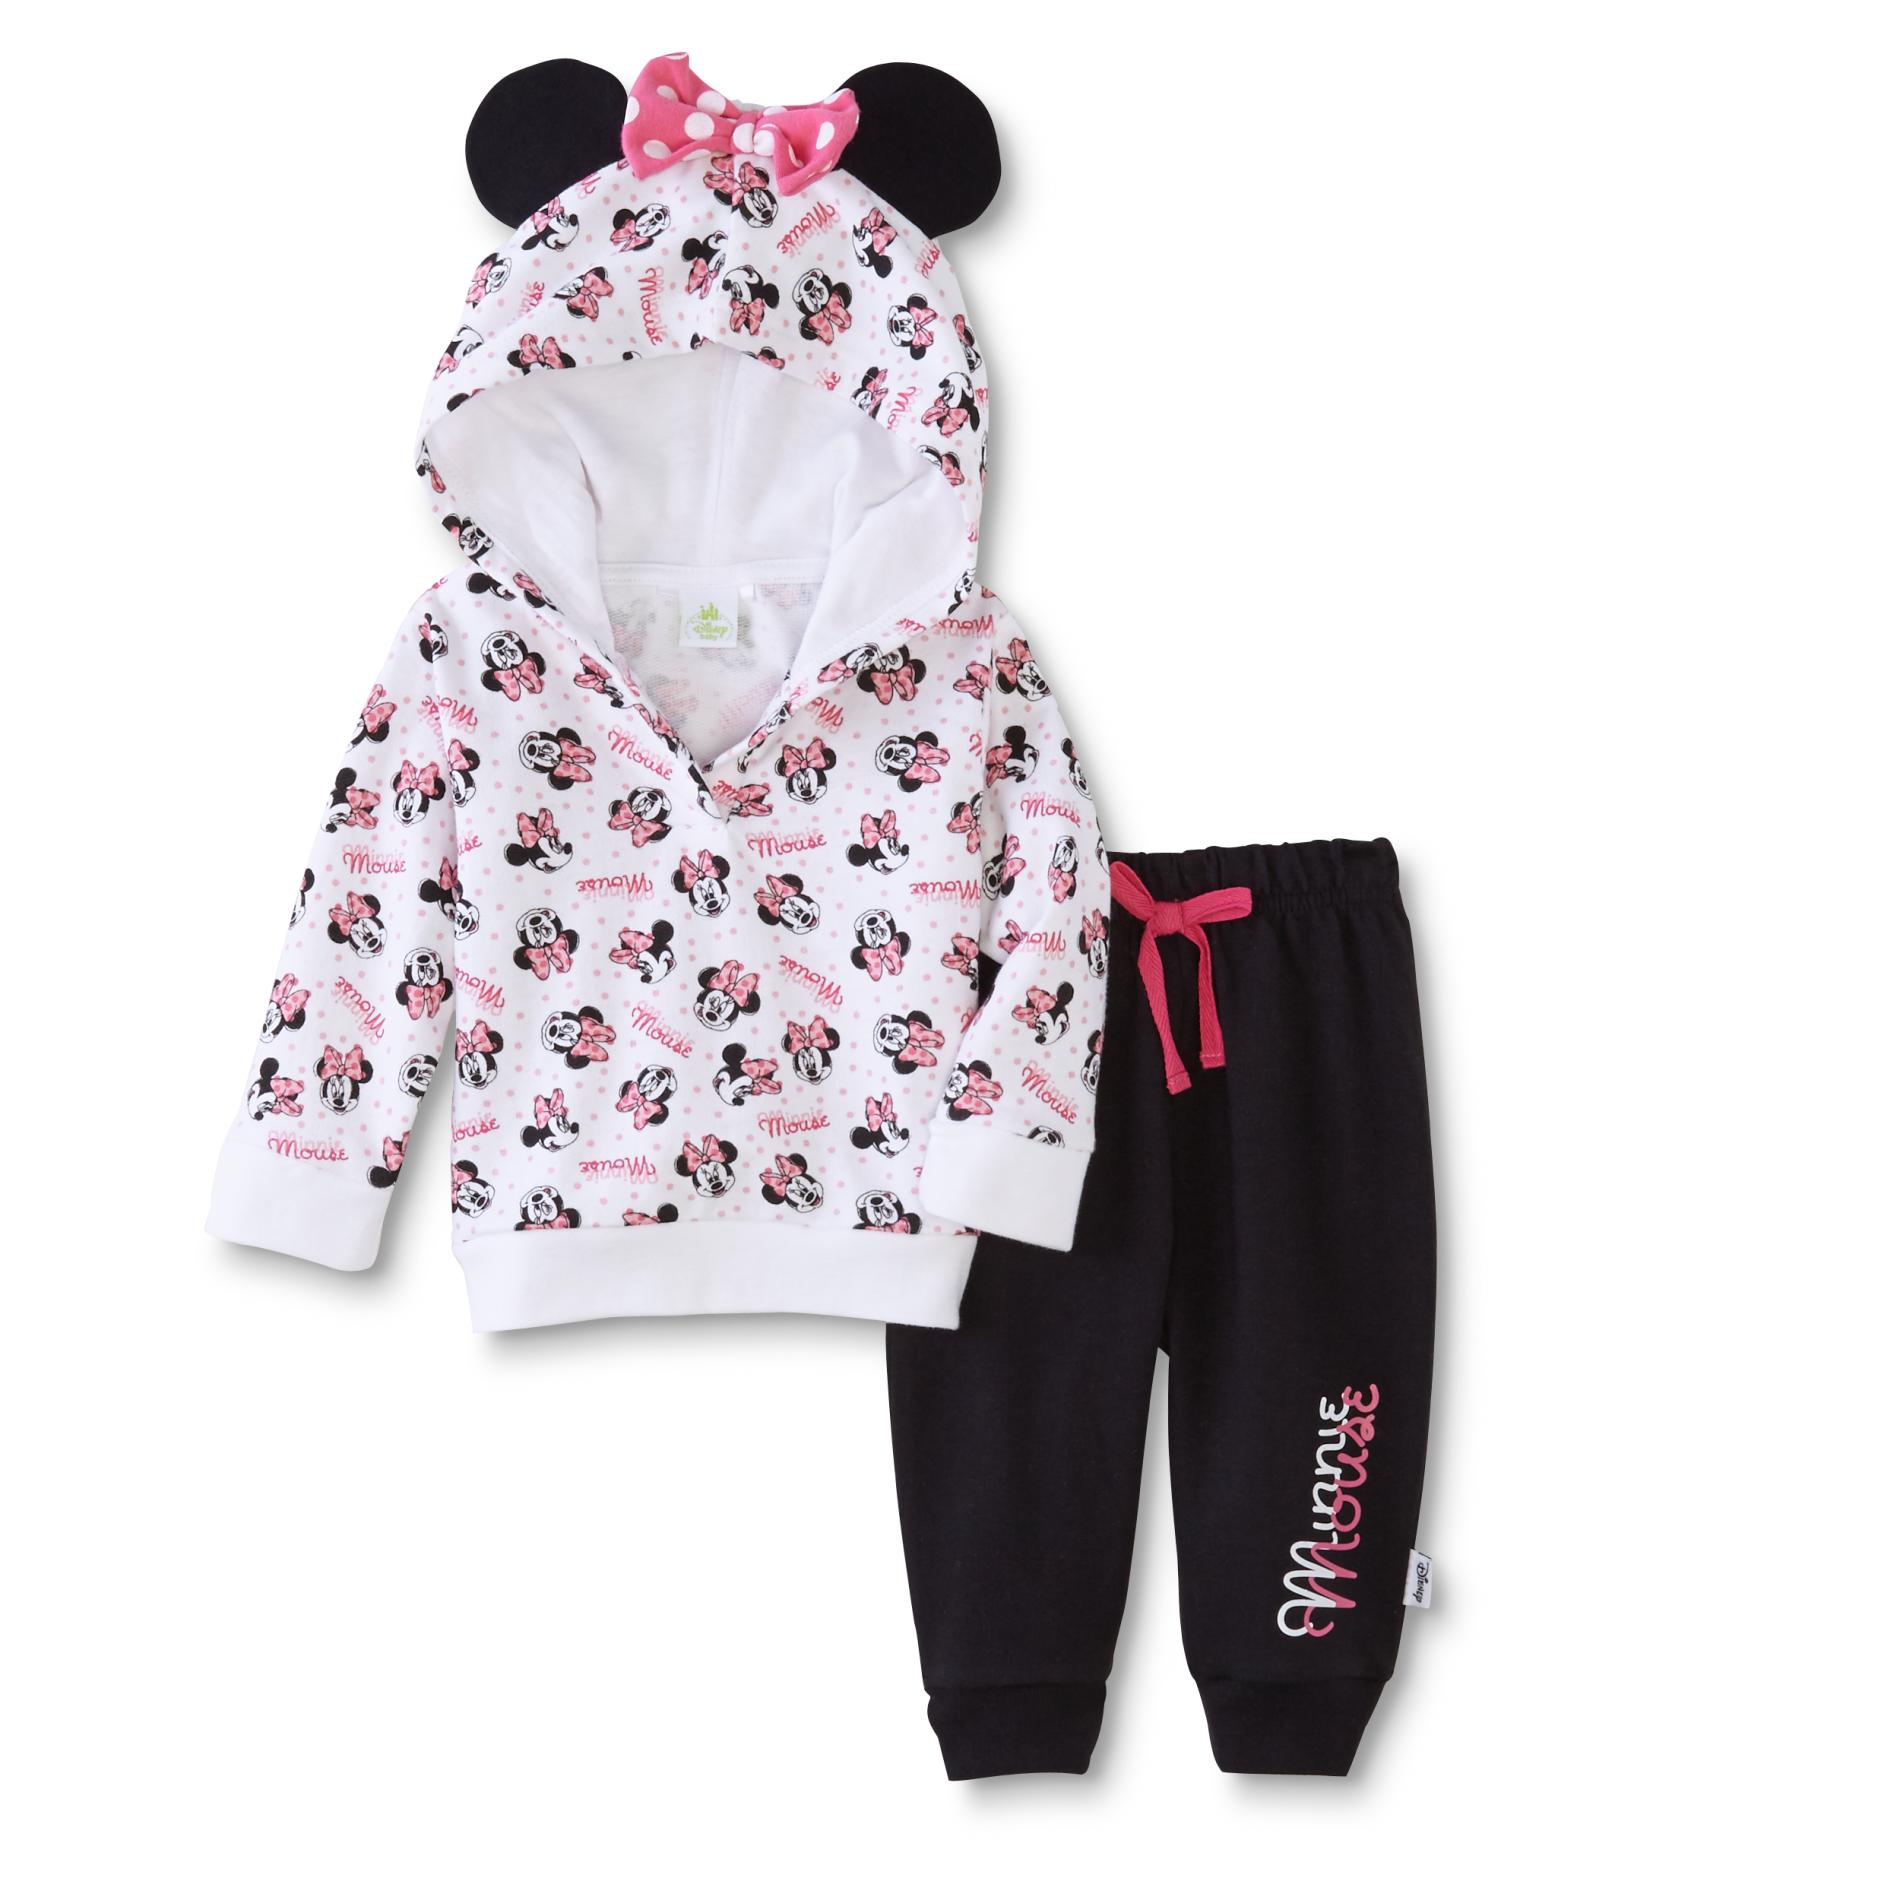 Minnie Mouse Infants Clothing | Kmart.com